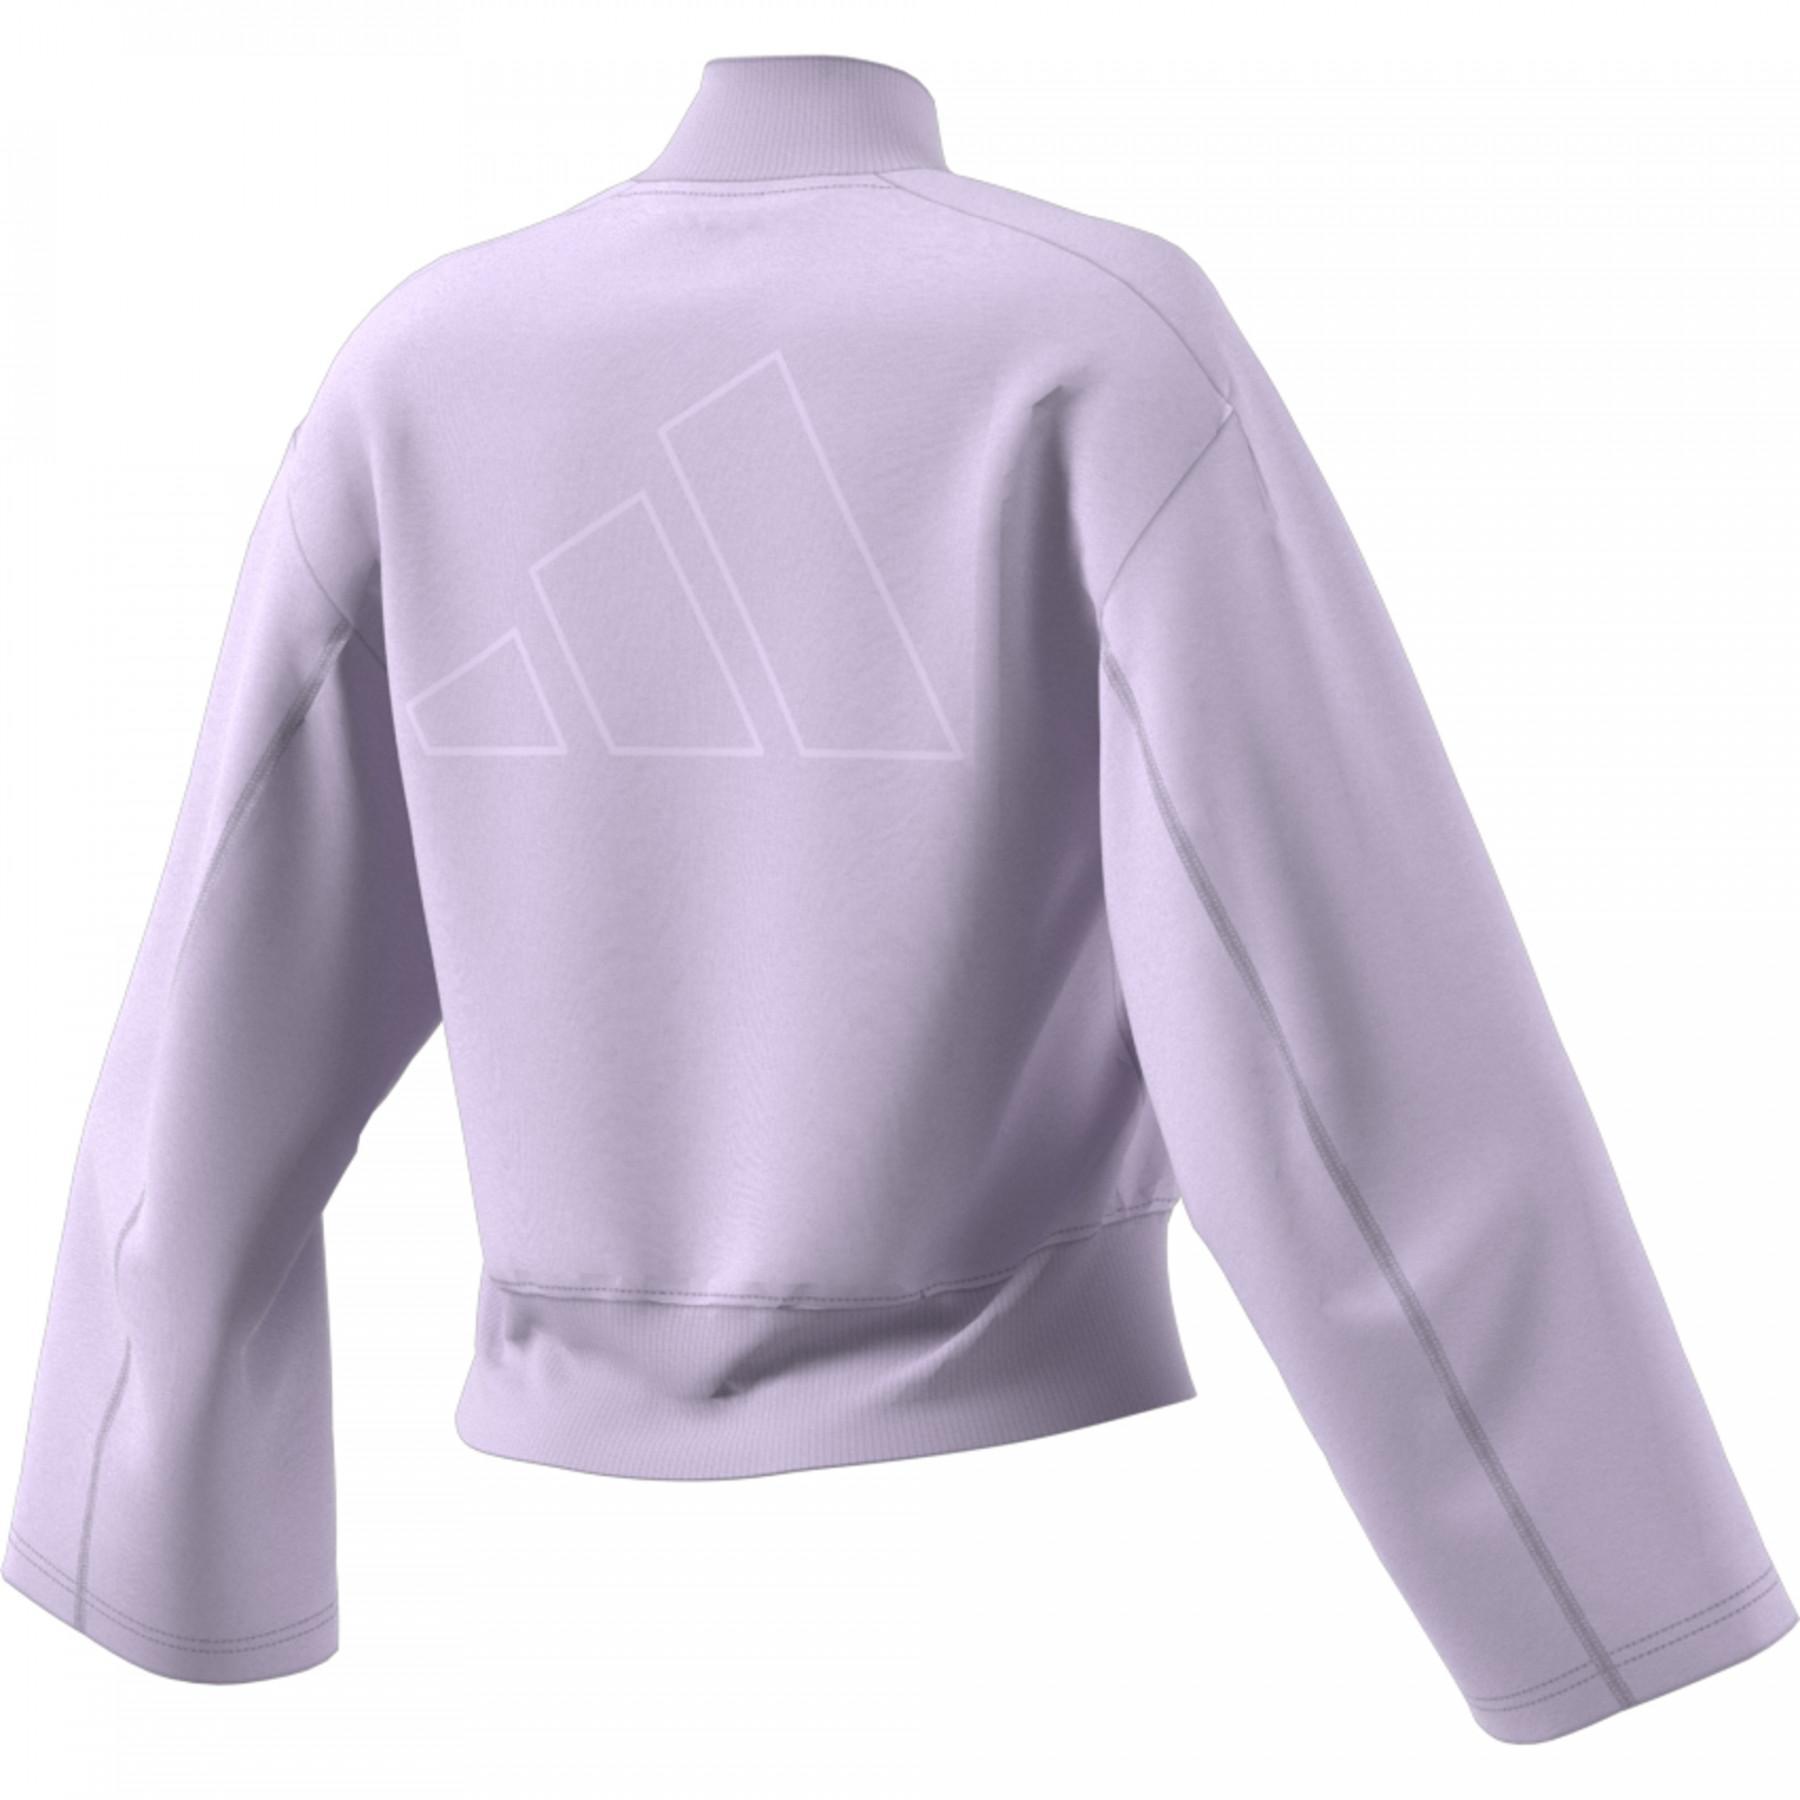 Damen-Sweatshirt adidas Embroidered Graphic